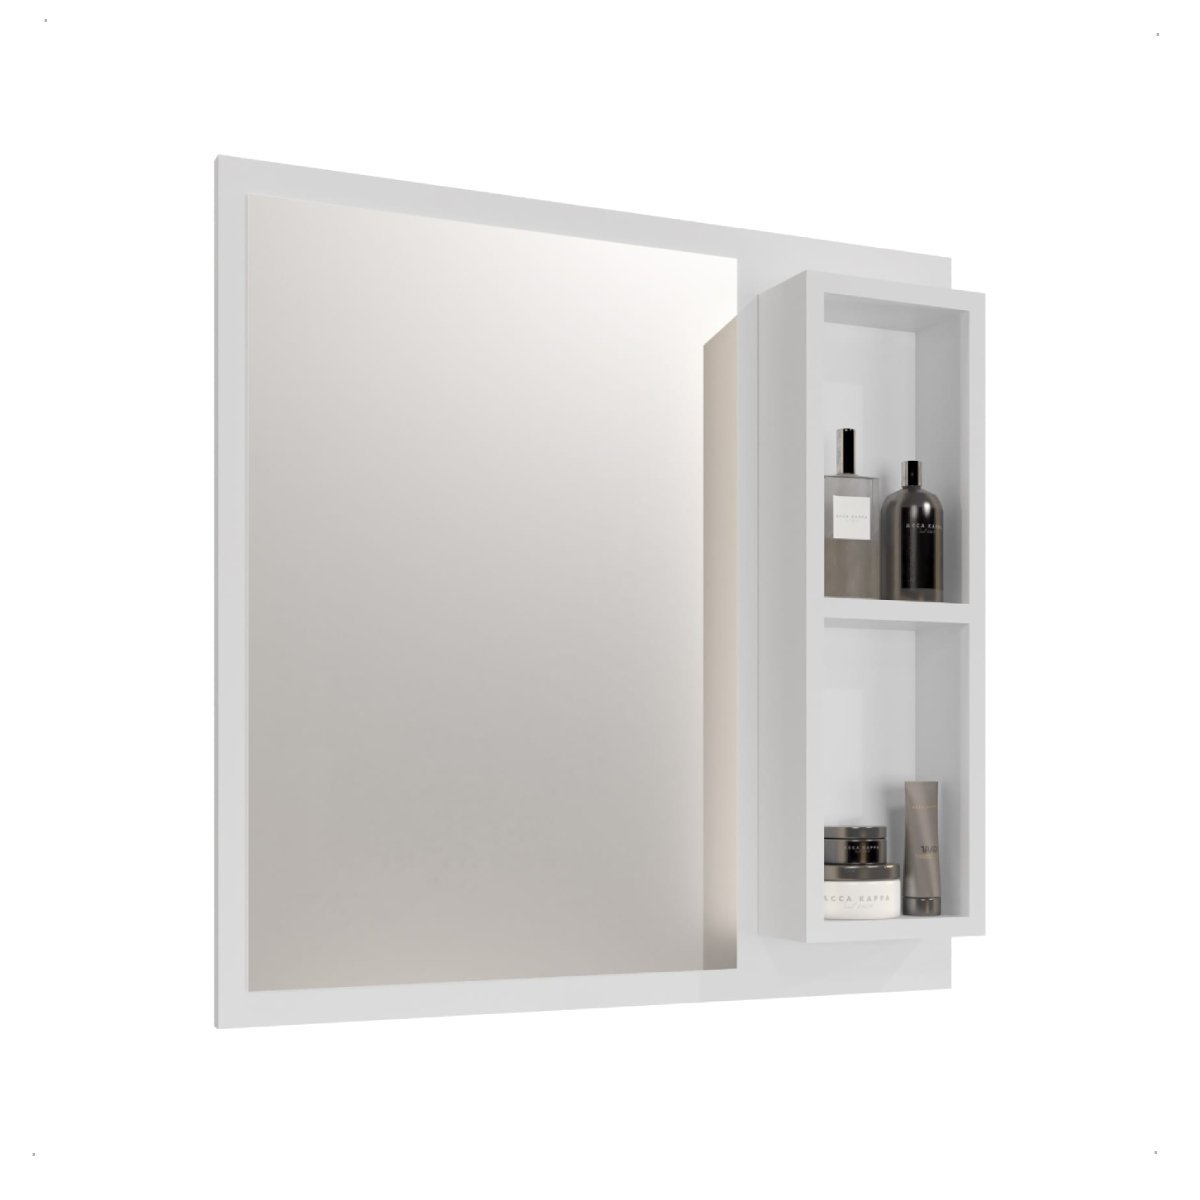 Espelheira Armário para Banheiro Espelho Cronos Várias Cores:branco